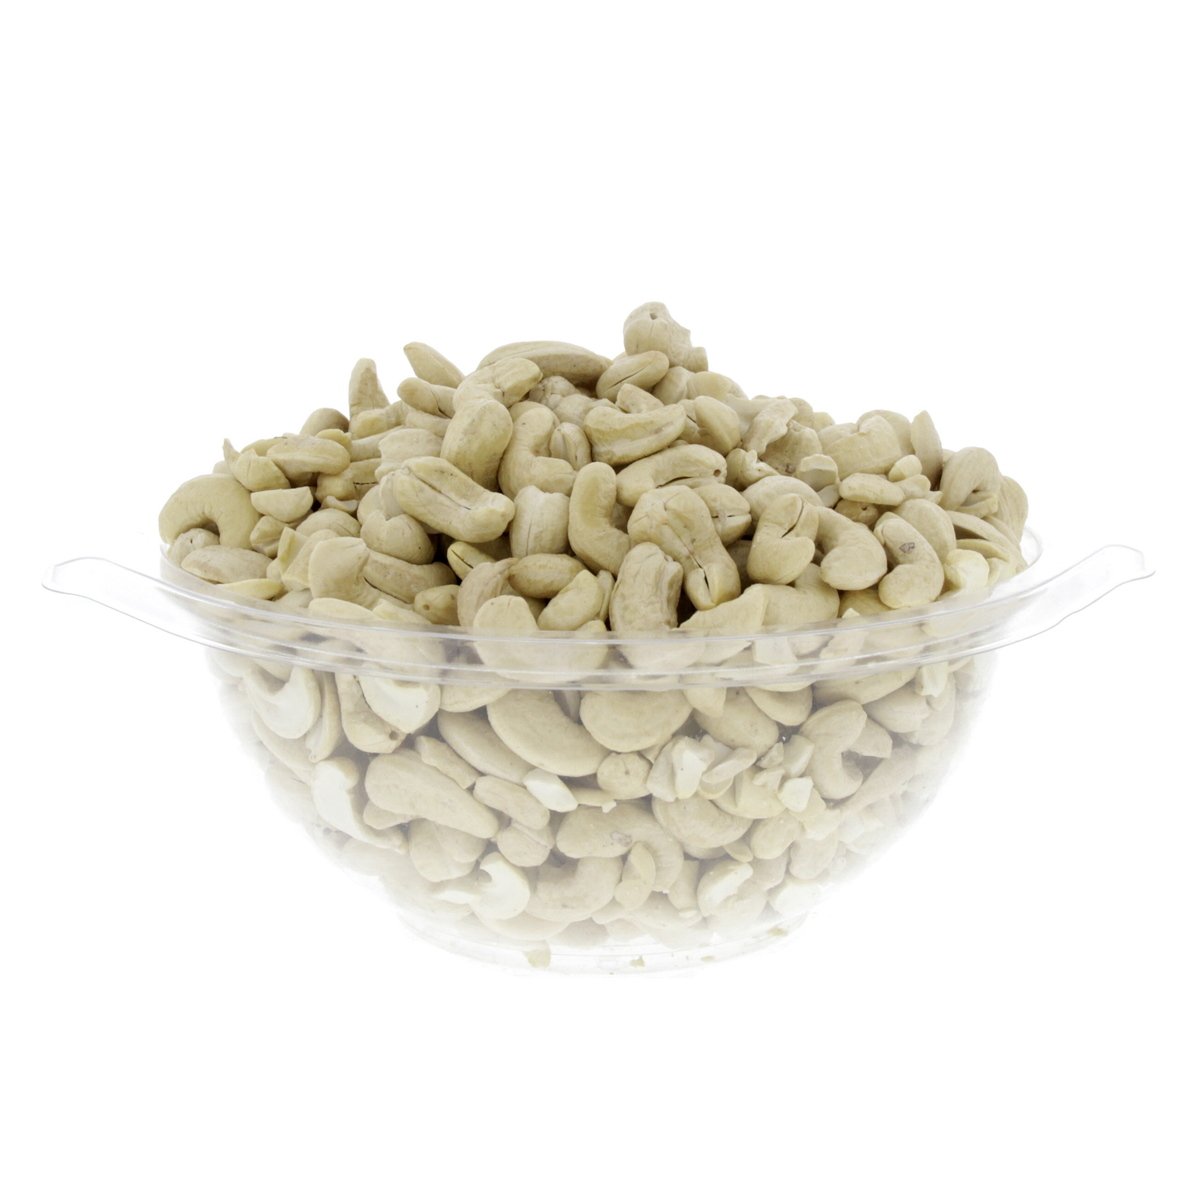 Buy Cashew Nuts W320 1 kg Online at Best Price | Roastery Nuts | Lulu Kuwait in Saudi Arabia